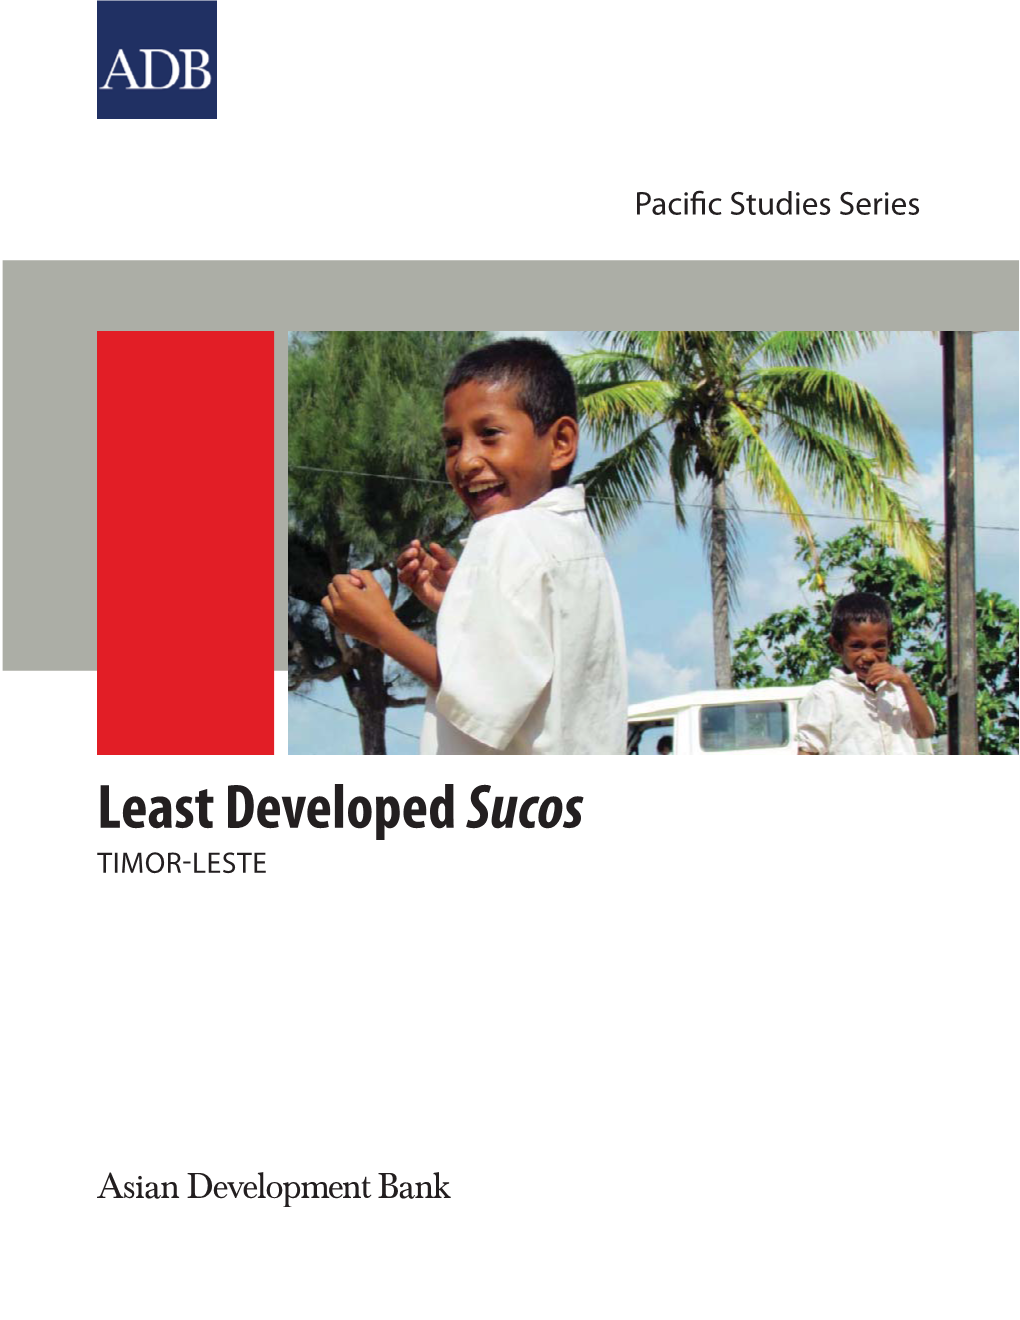 Least Developed Sucos: Timor-Leste